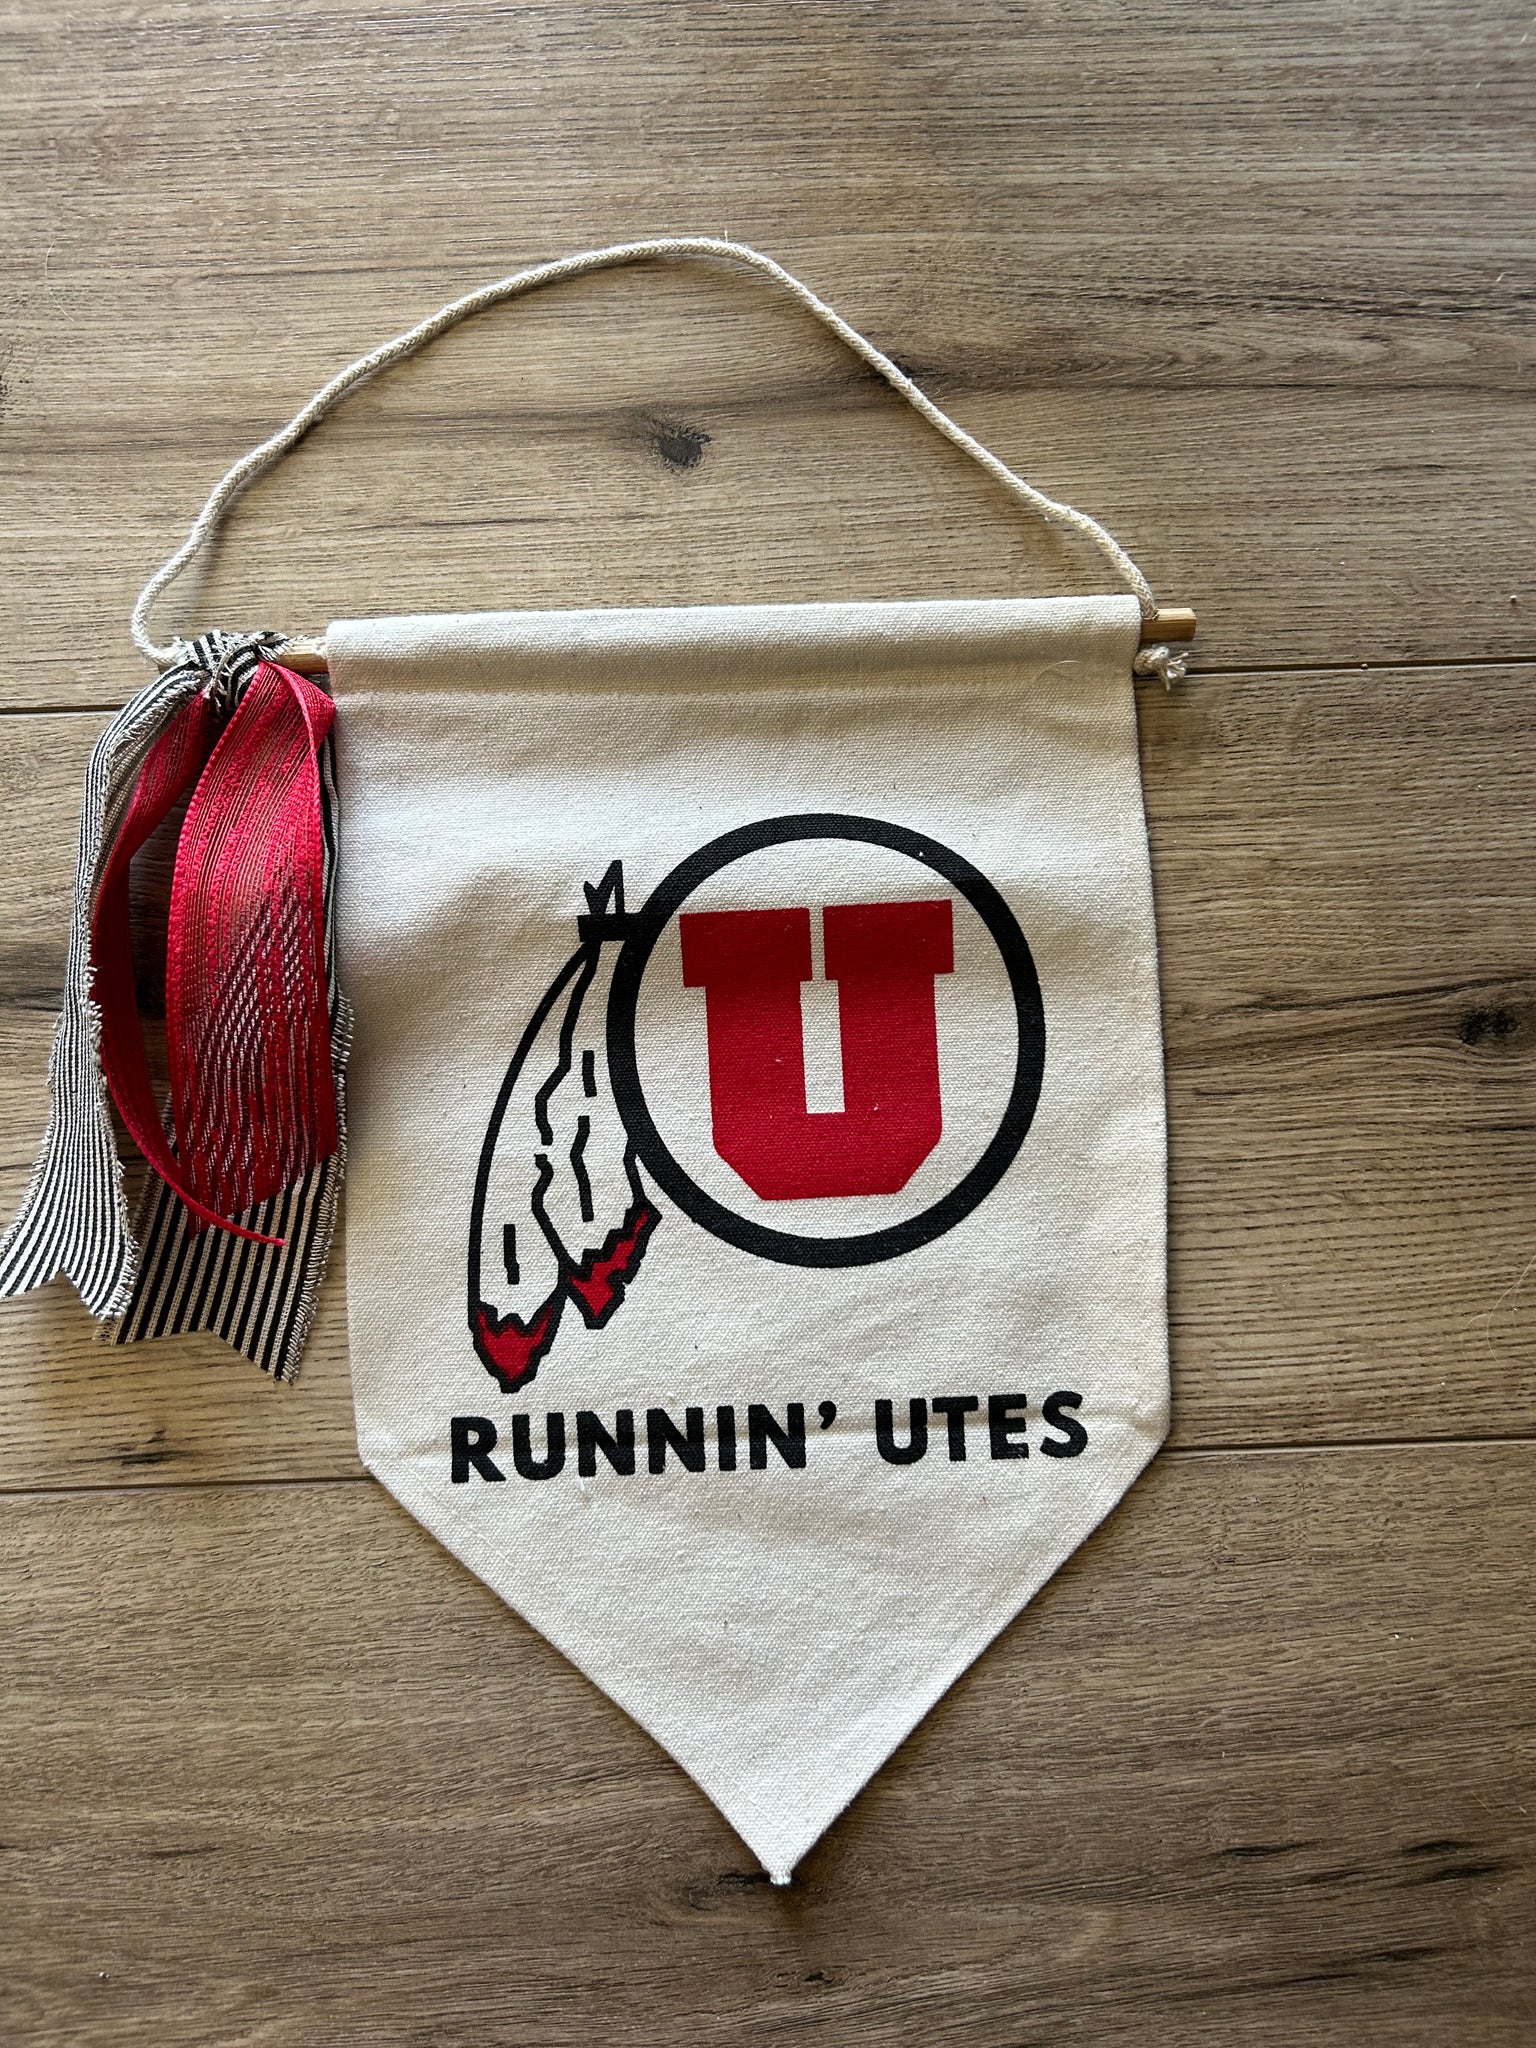 Runnin' Utes